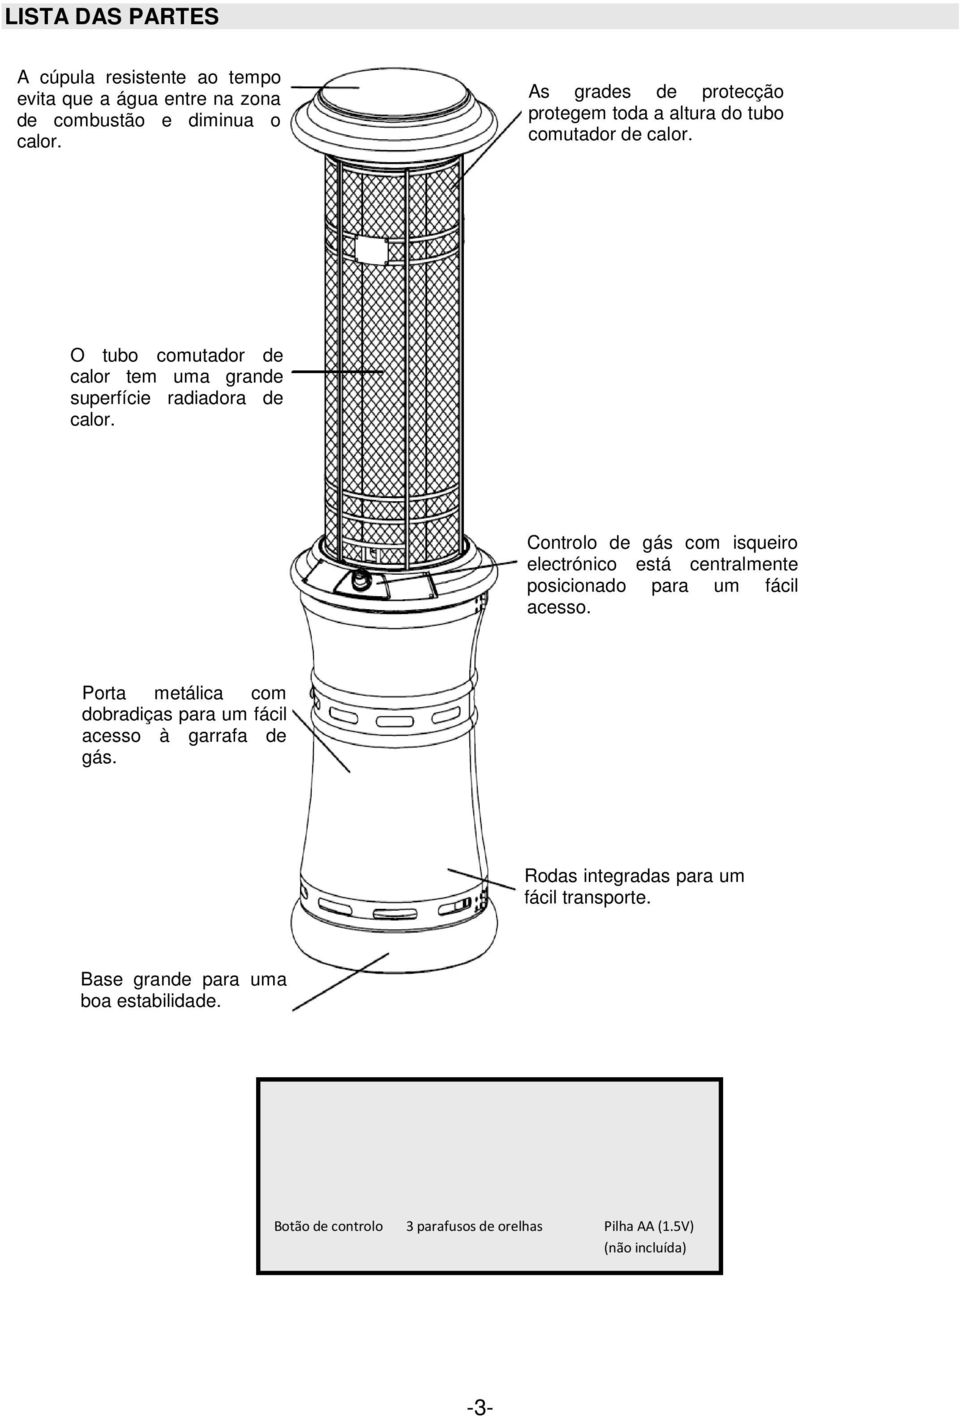 O tubo comutador de calor tem uma grande superfície radiadora de calor.